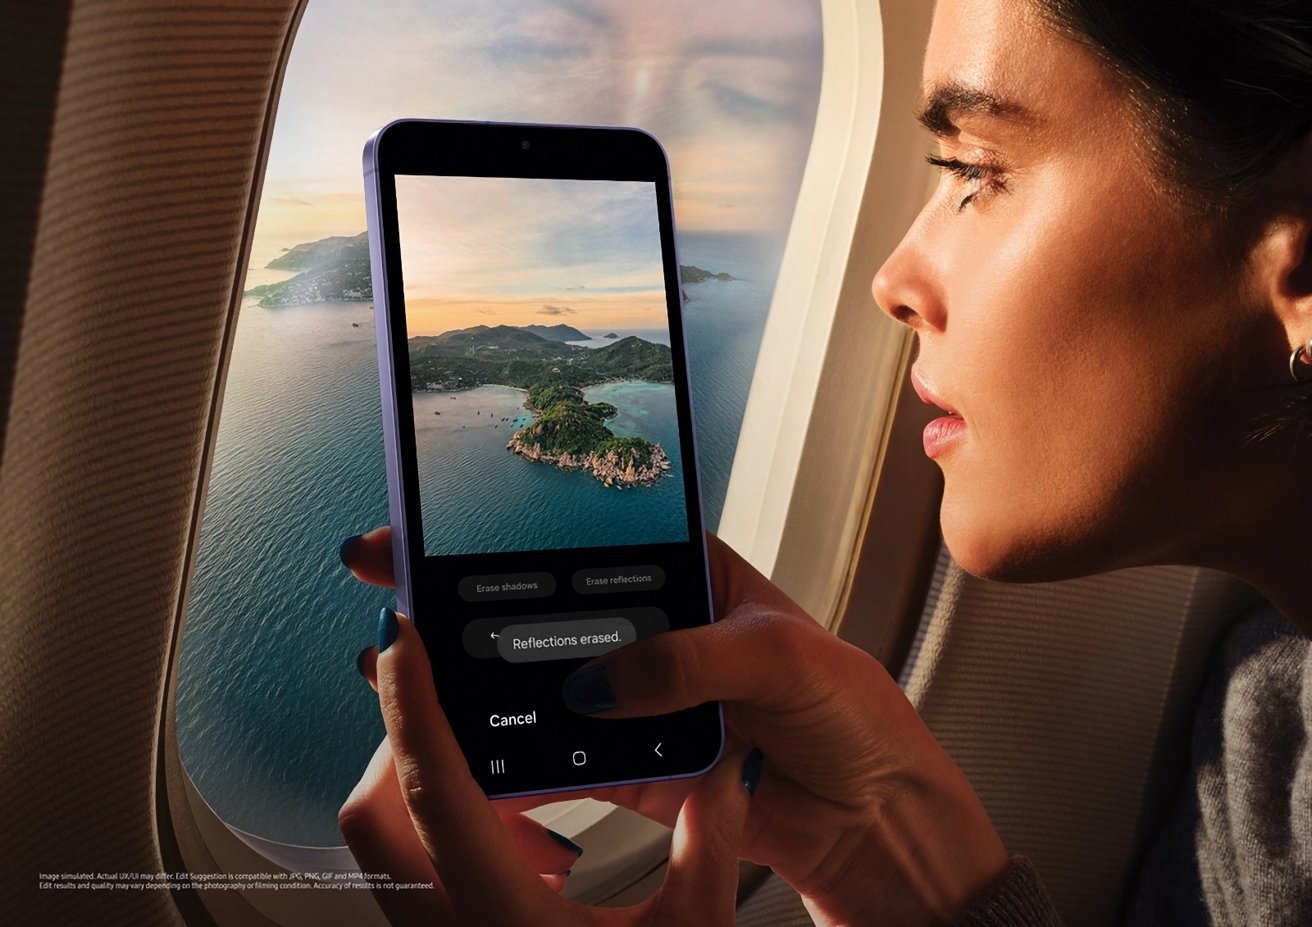 Женщина внимательно смотрит на свой телефон, на котором изображен живописный прибрежный пейзаж, как будто снятый из окна самолета рядом с ней.